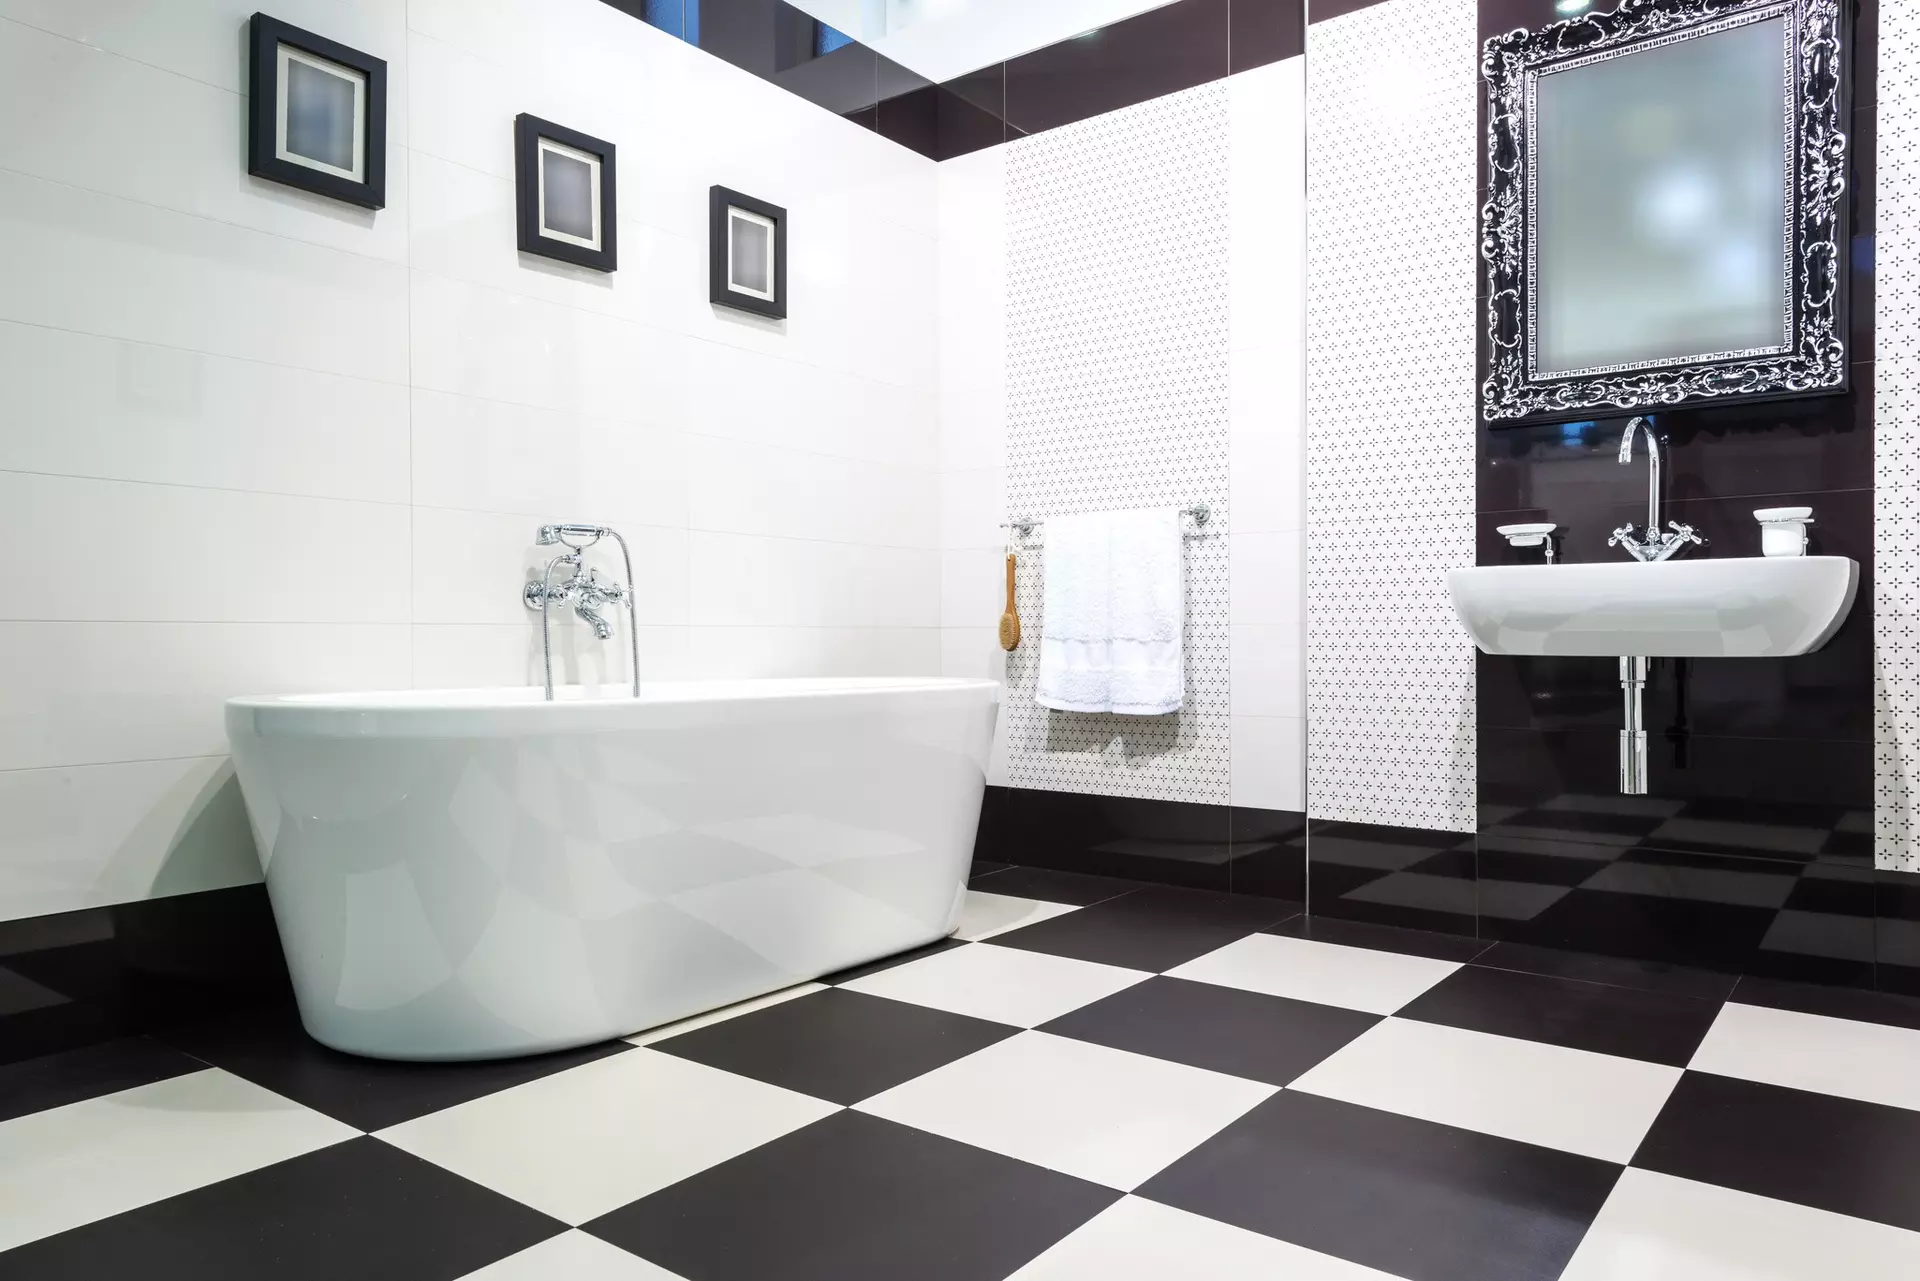 Beispiel für ein Bad in schwarz weiß